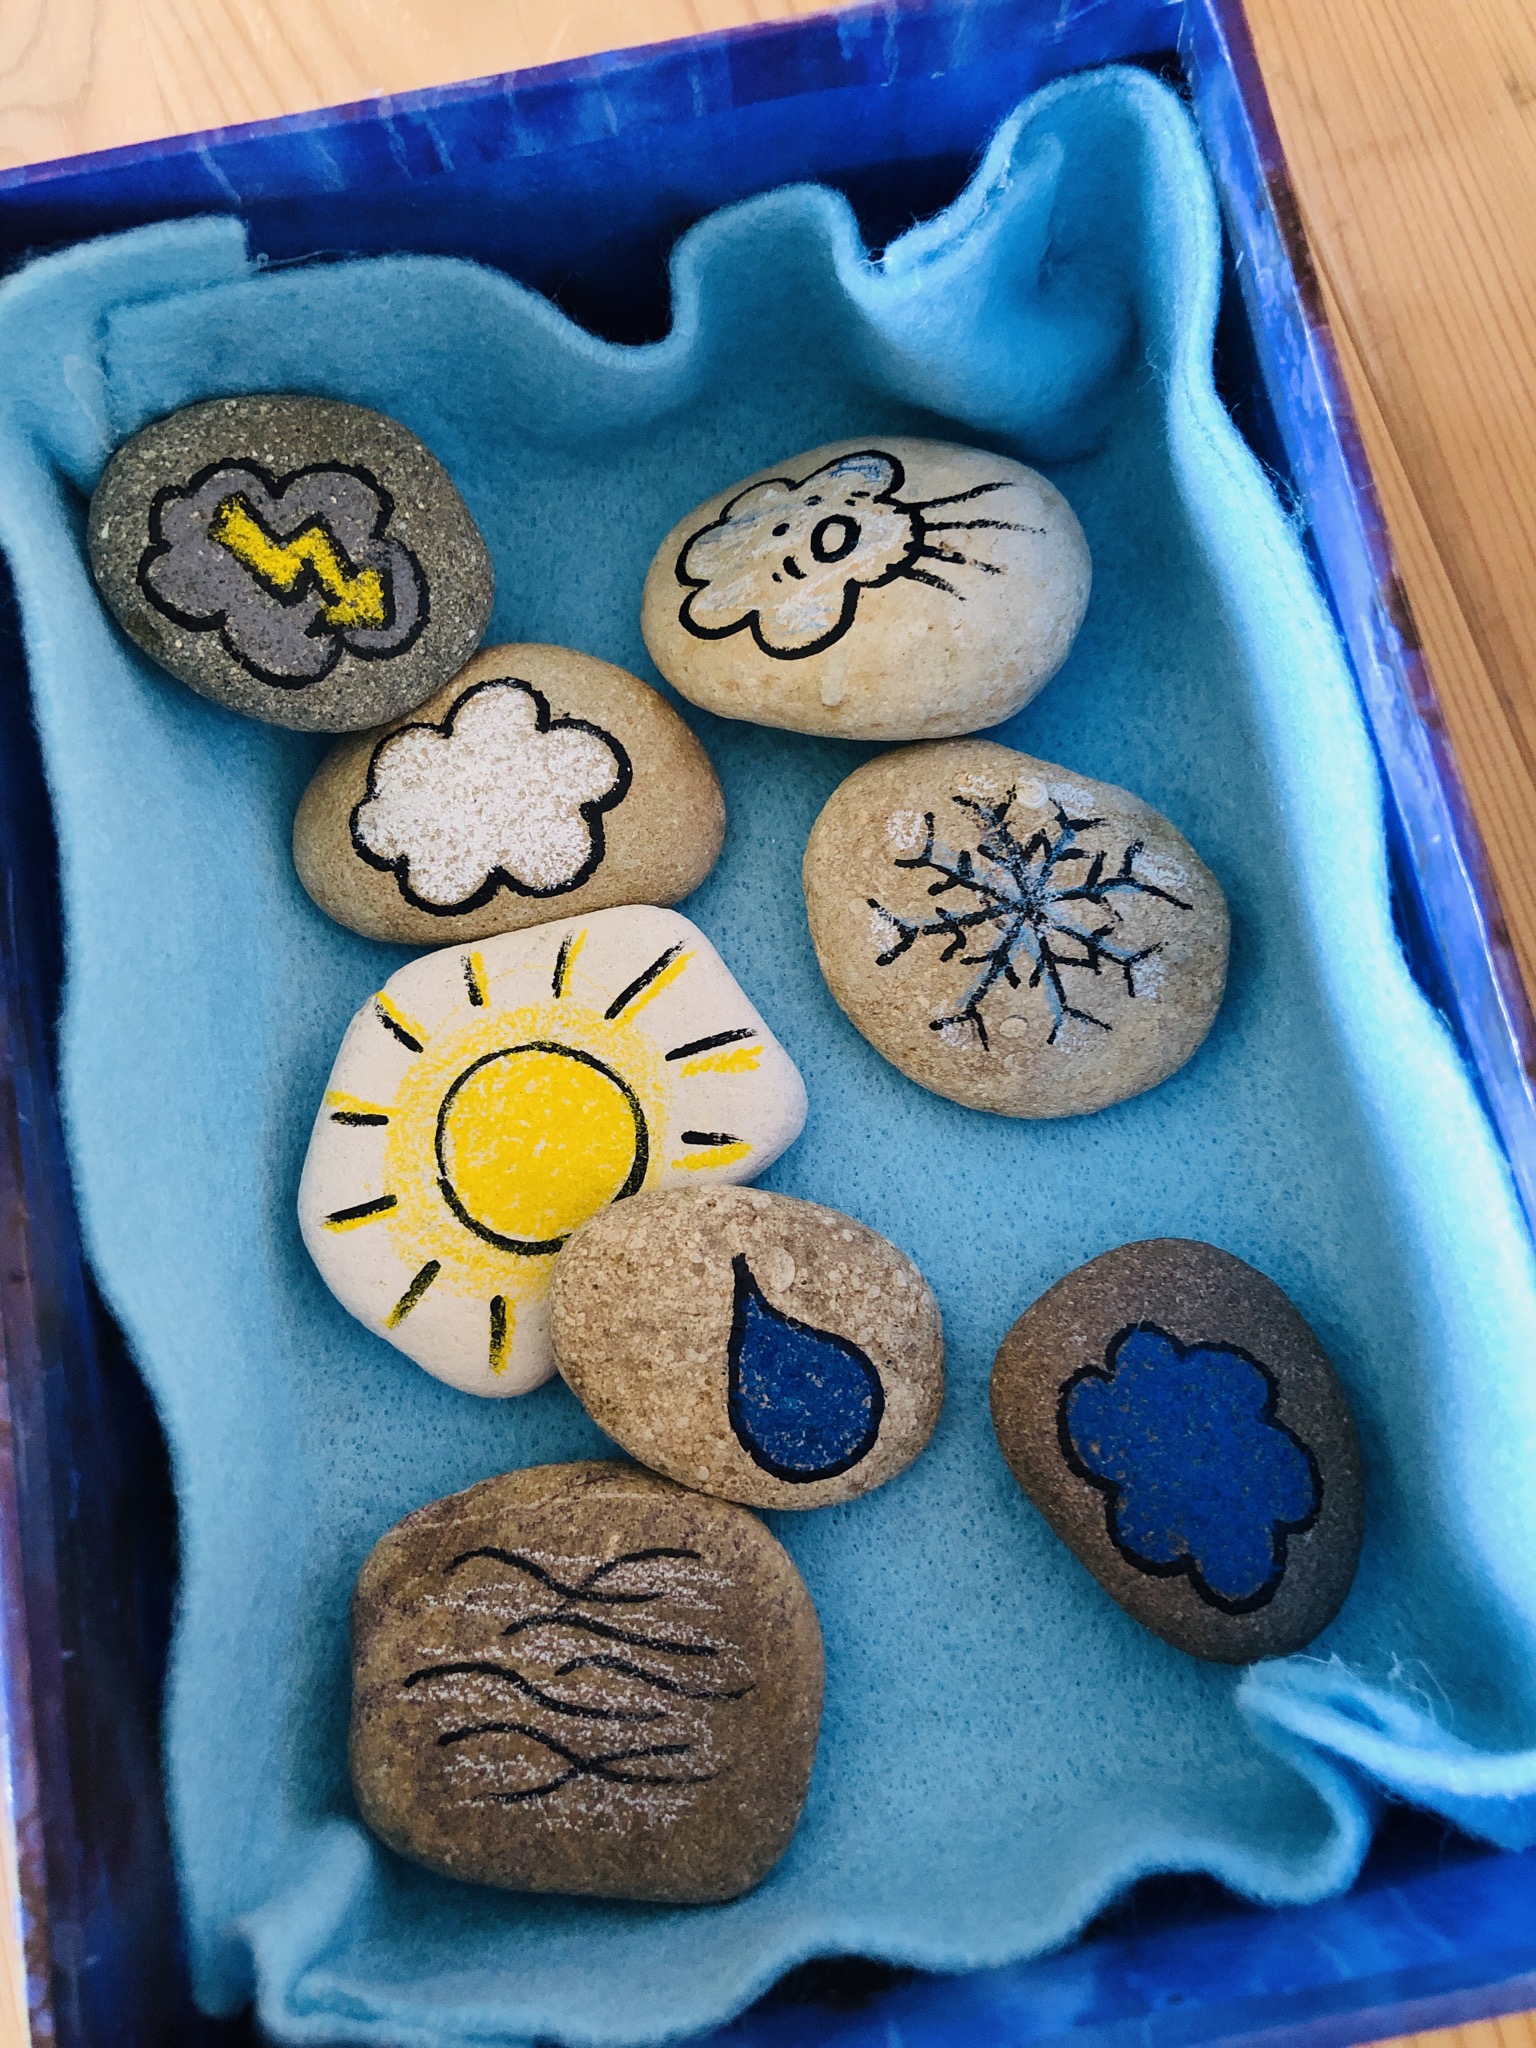 Bild zum Schritt 28 für das Bastel- und DIY-Abenteuer für Kinder: 'Legt die Wettersteine in eine mit Filz ausgelegte Box.'